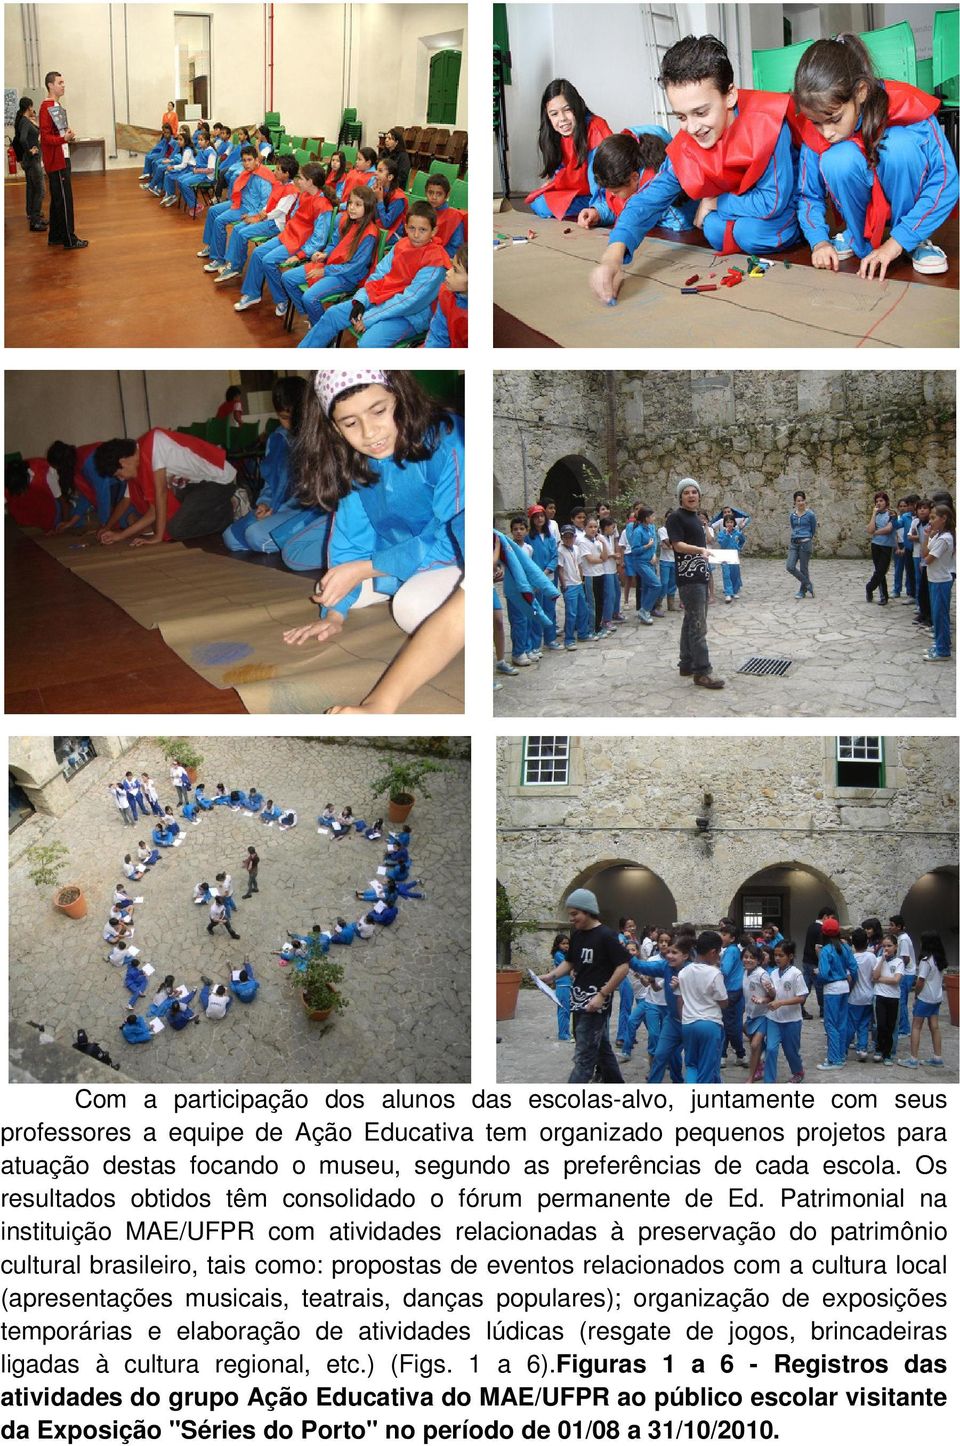 Patrimonial na instituição MAE/UFPR com atividades relacionadas à preservação do patrimônio cultural brasileiro, tais como: propostas de eventos relacionados com a cultura local (apresentações